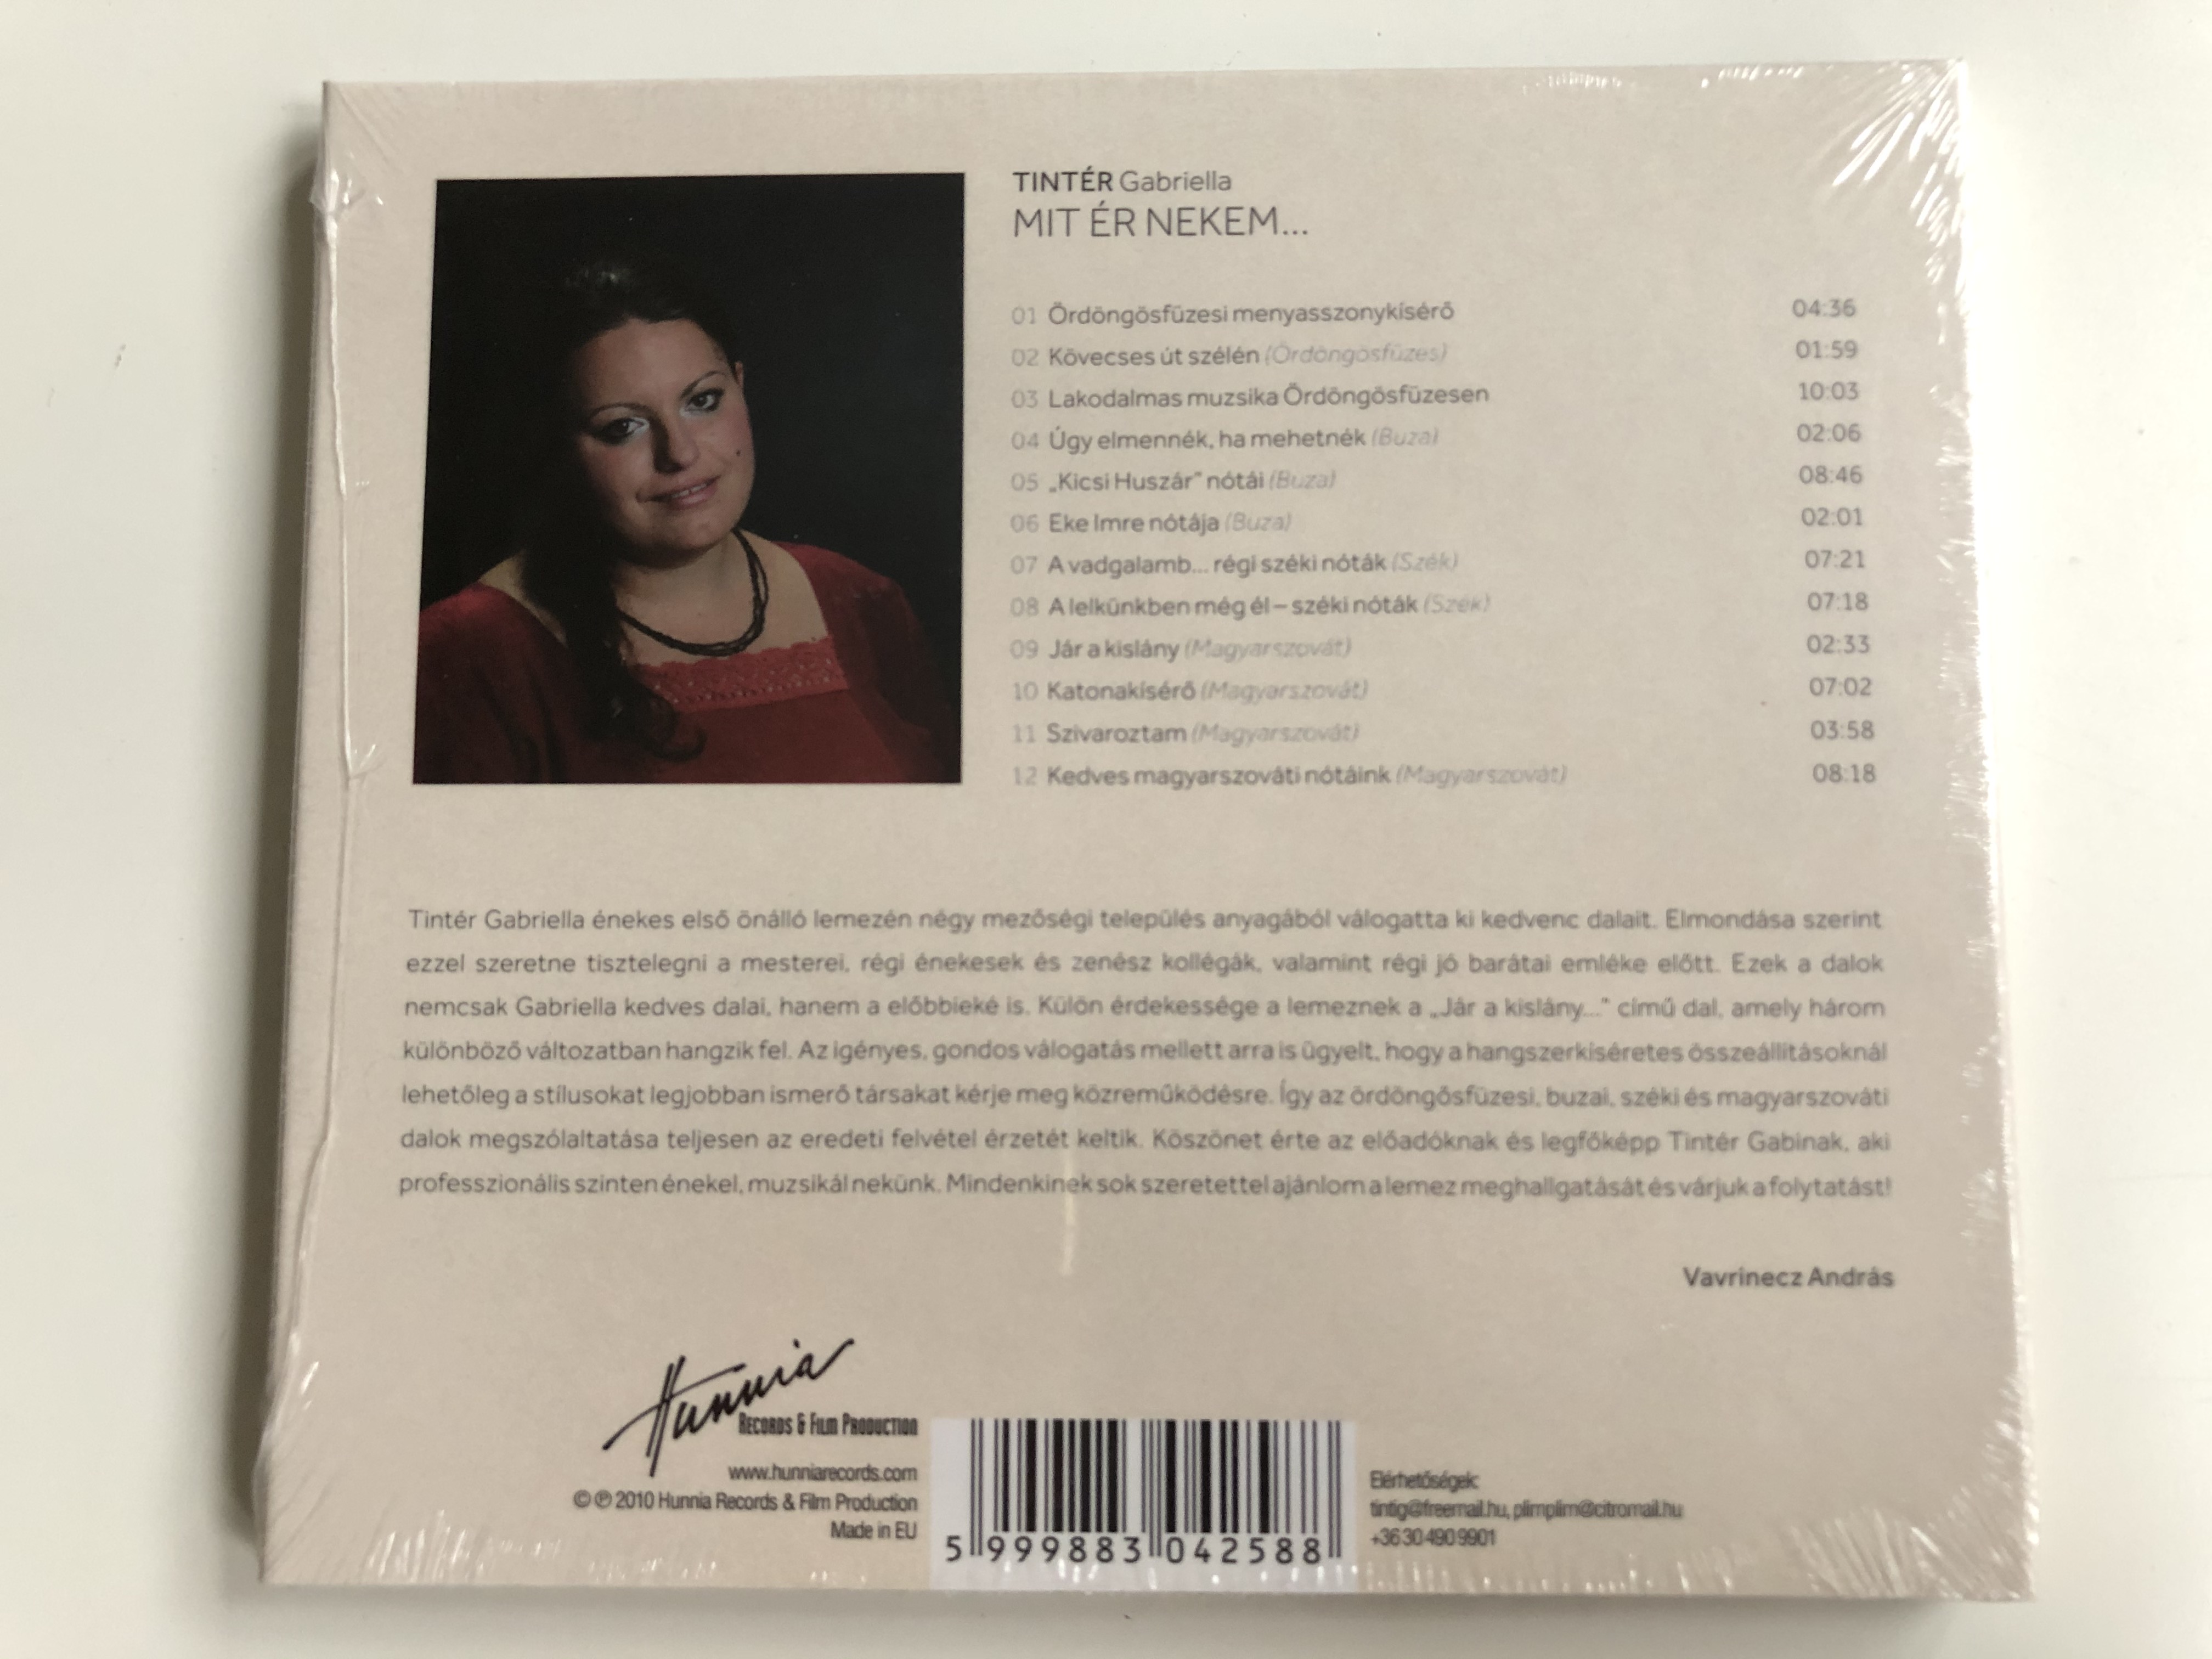 tint-r-gabriella-mit-r-nekem-hunnia-records-audio-cd-2010-hrcd-1014-2-.jpg